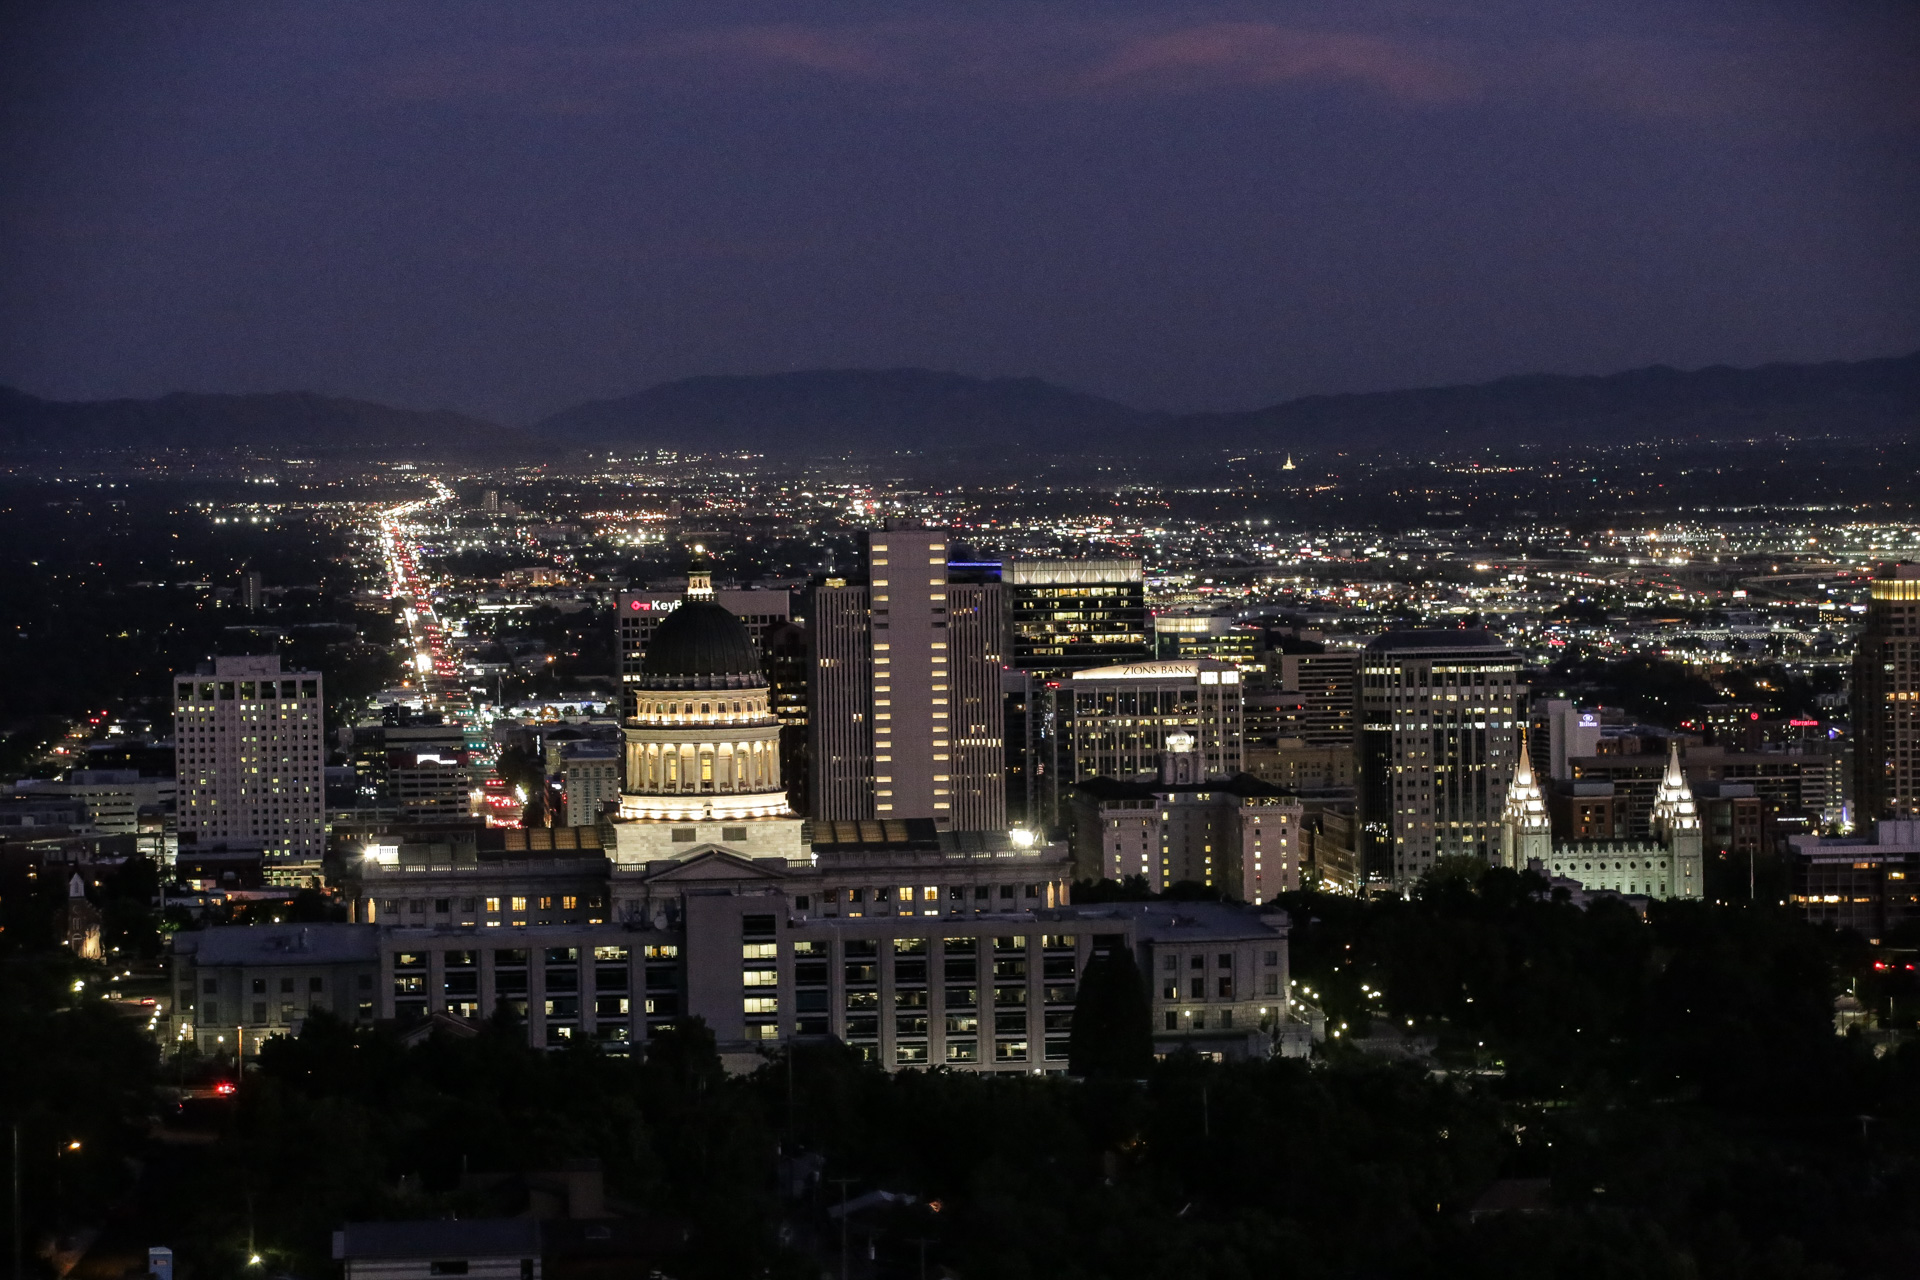 La nuit tombe sur le centre de Salt Lake